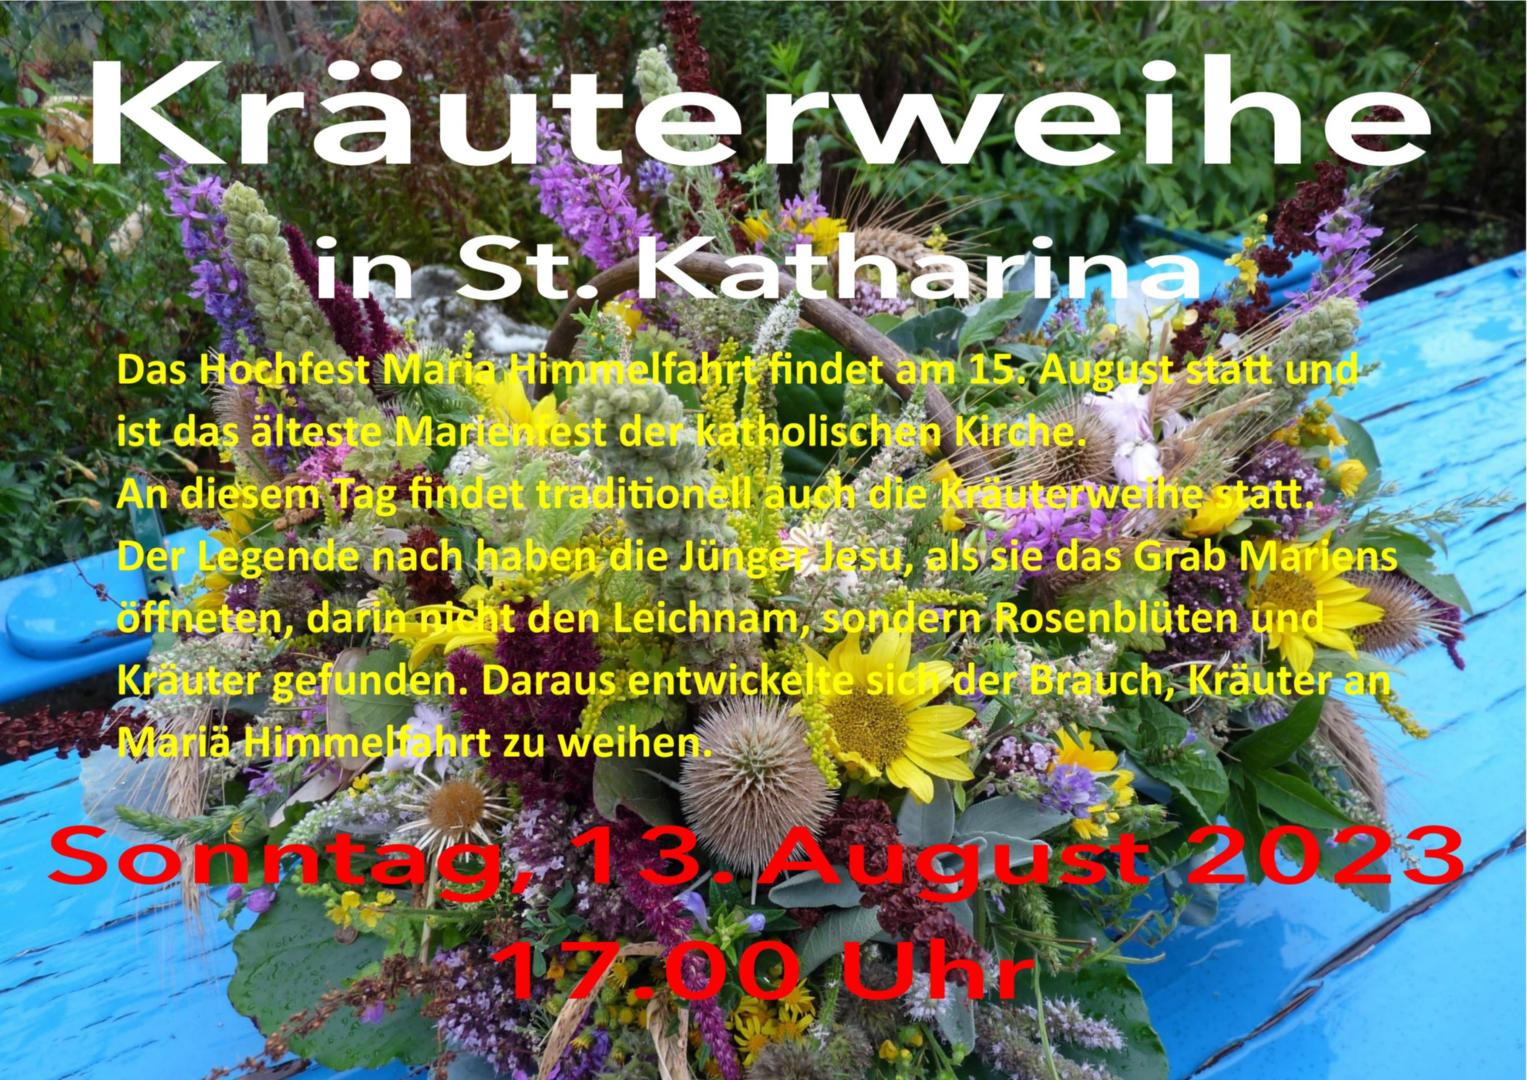 Kräuterweihe 2023-Plakat (c) Maria Wefers